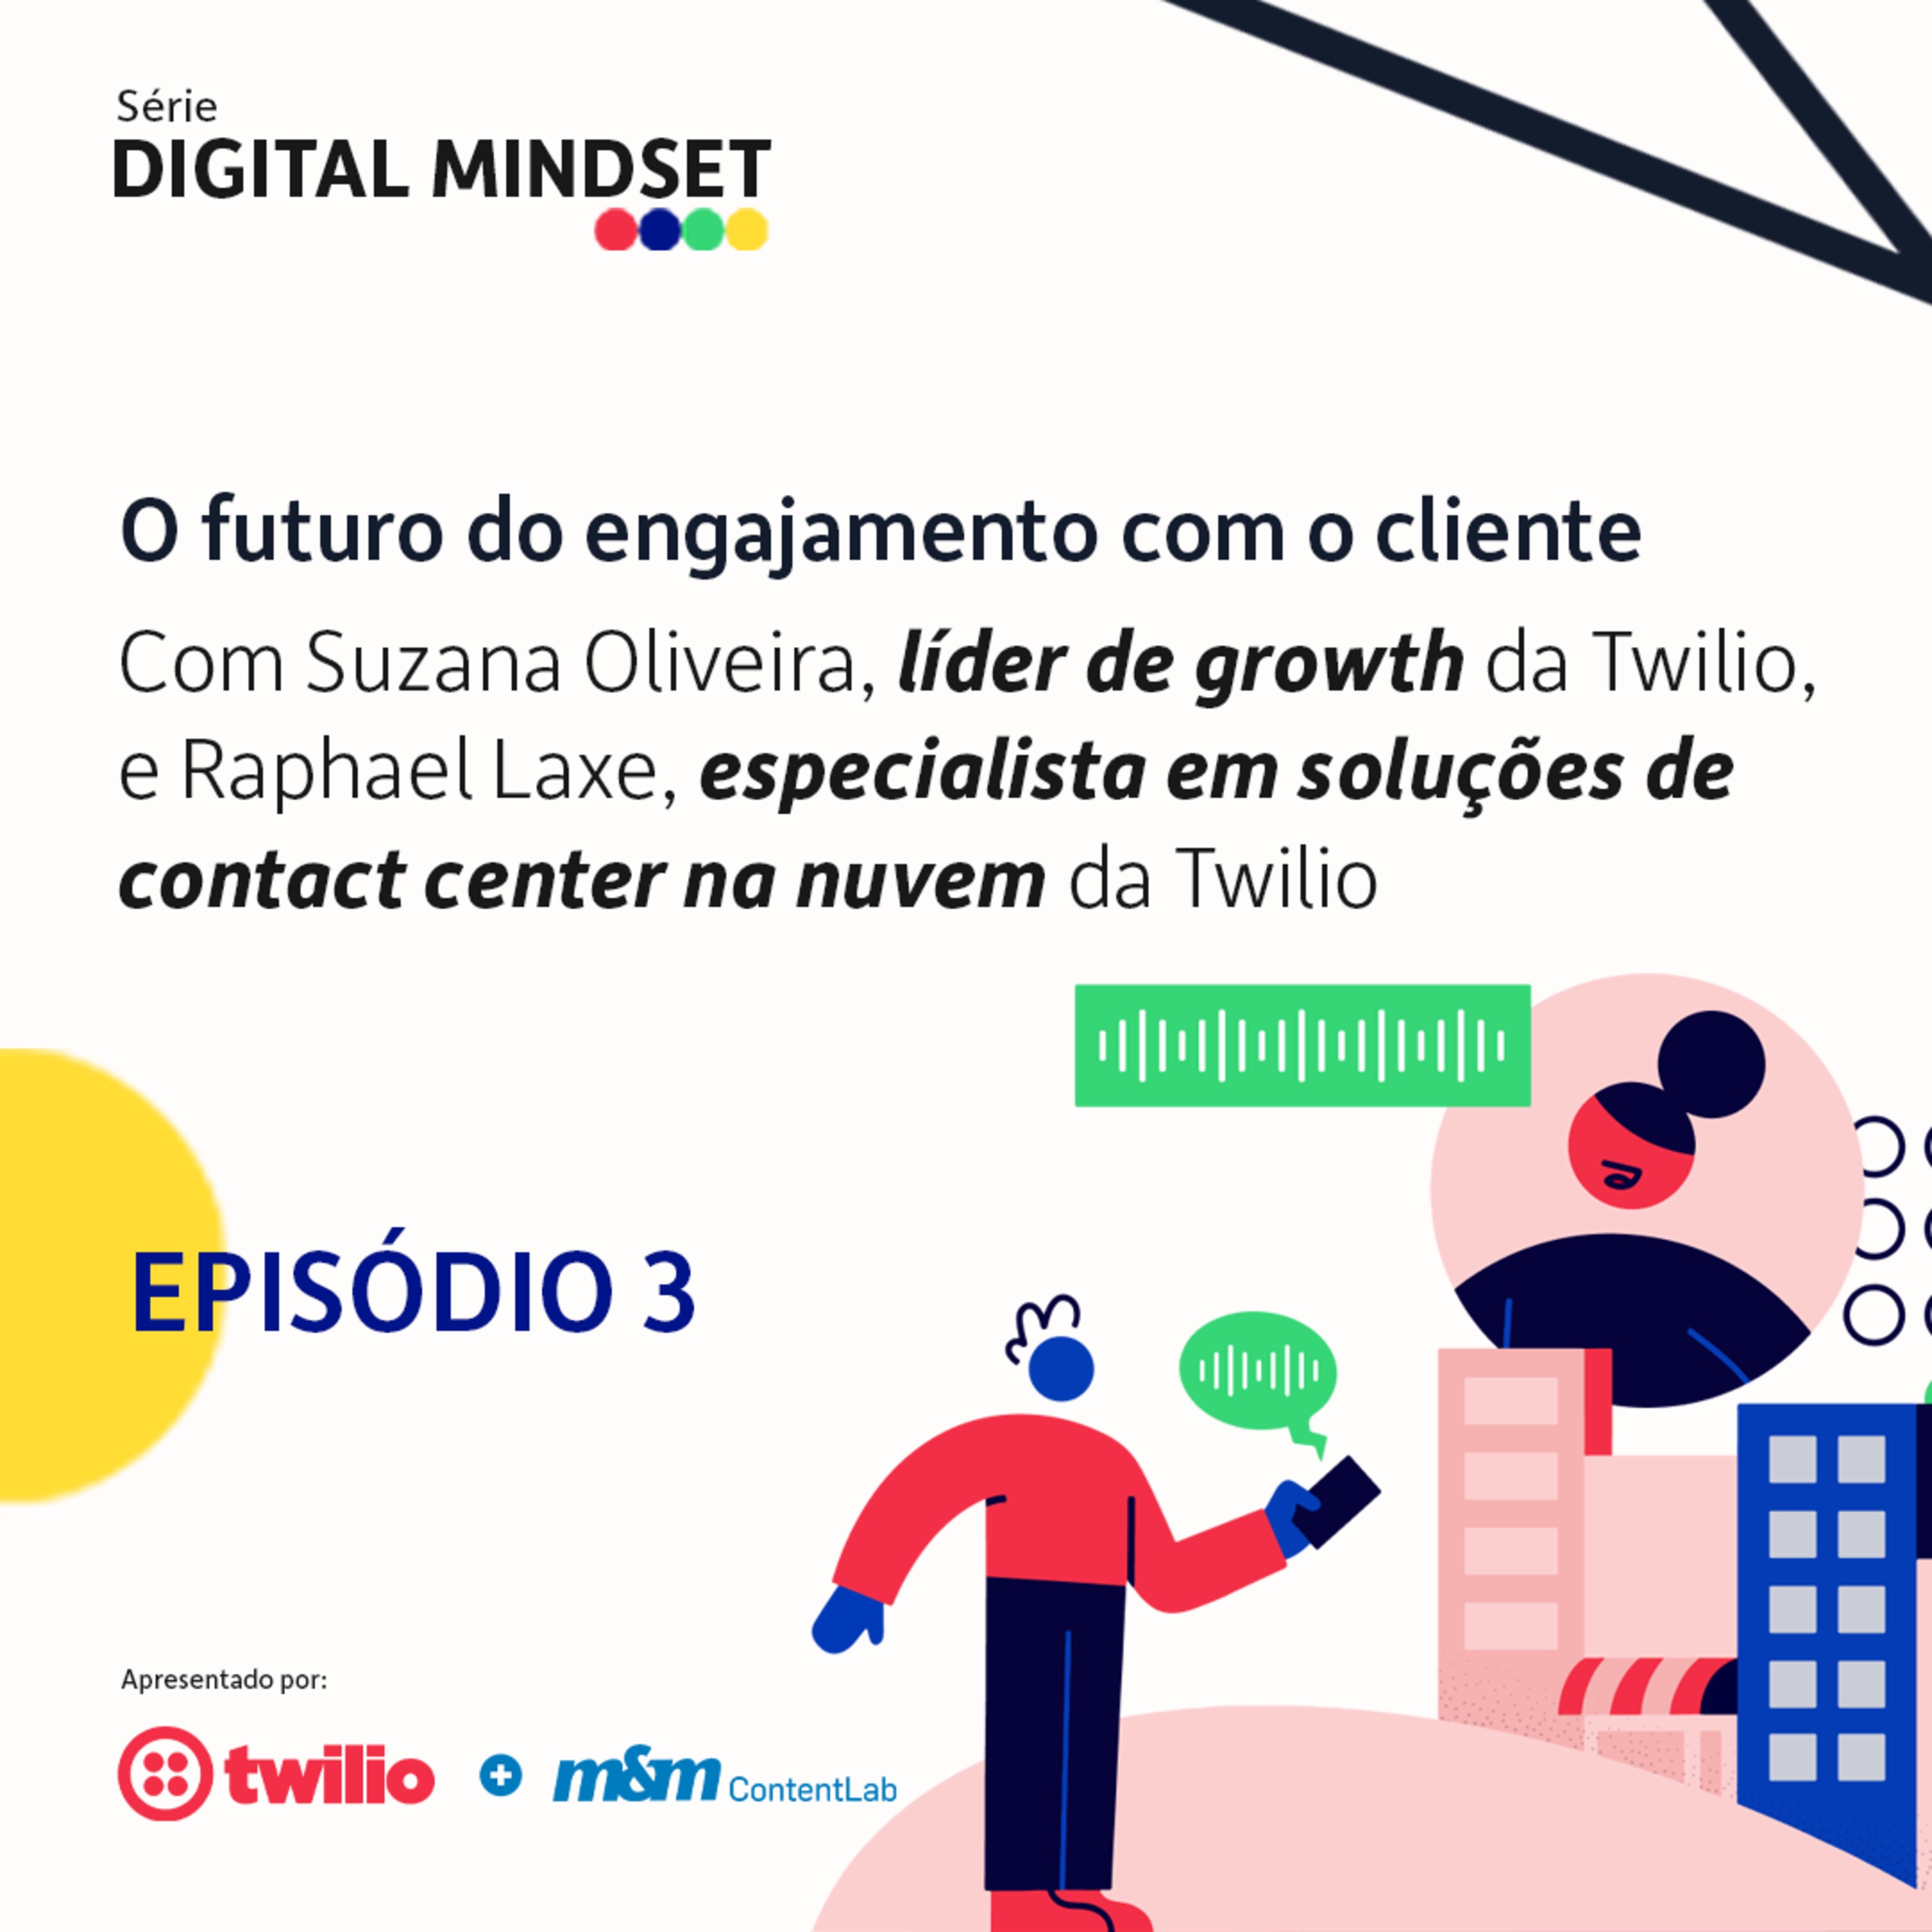 Digital mindset #3 | O futuro do engajamento com o cliente